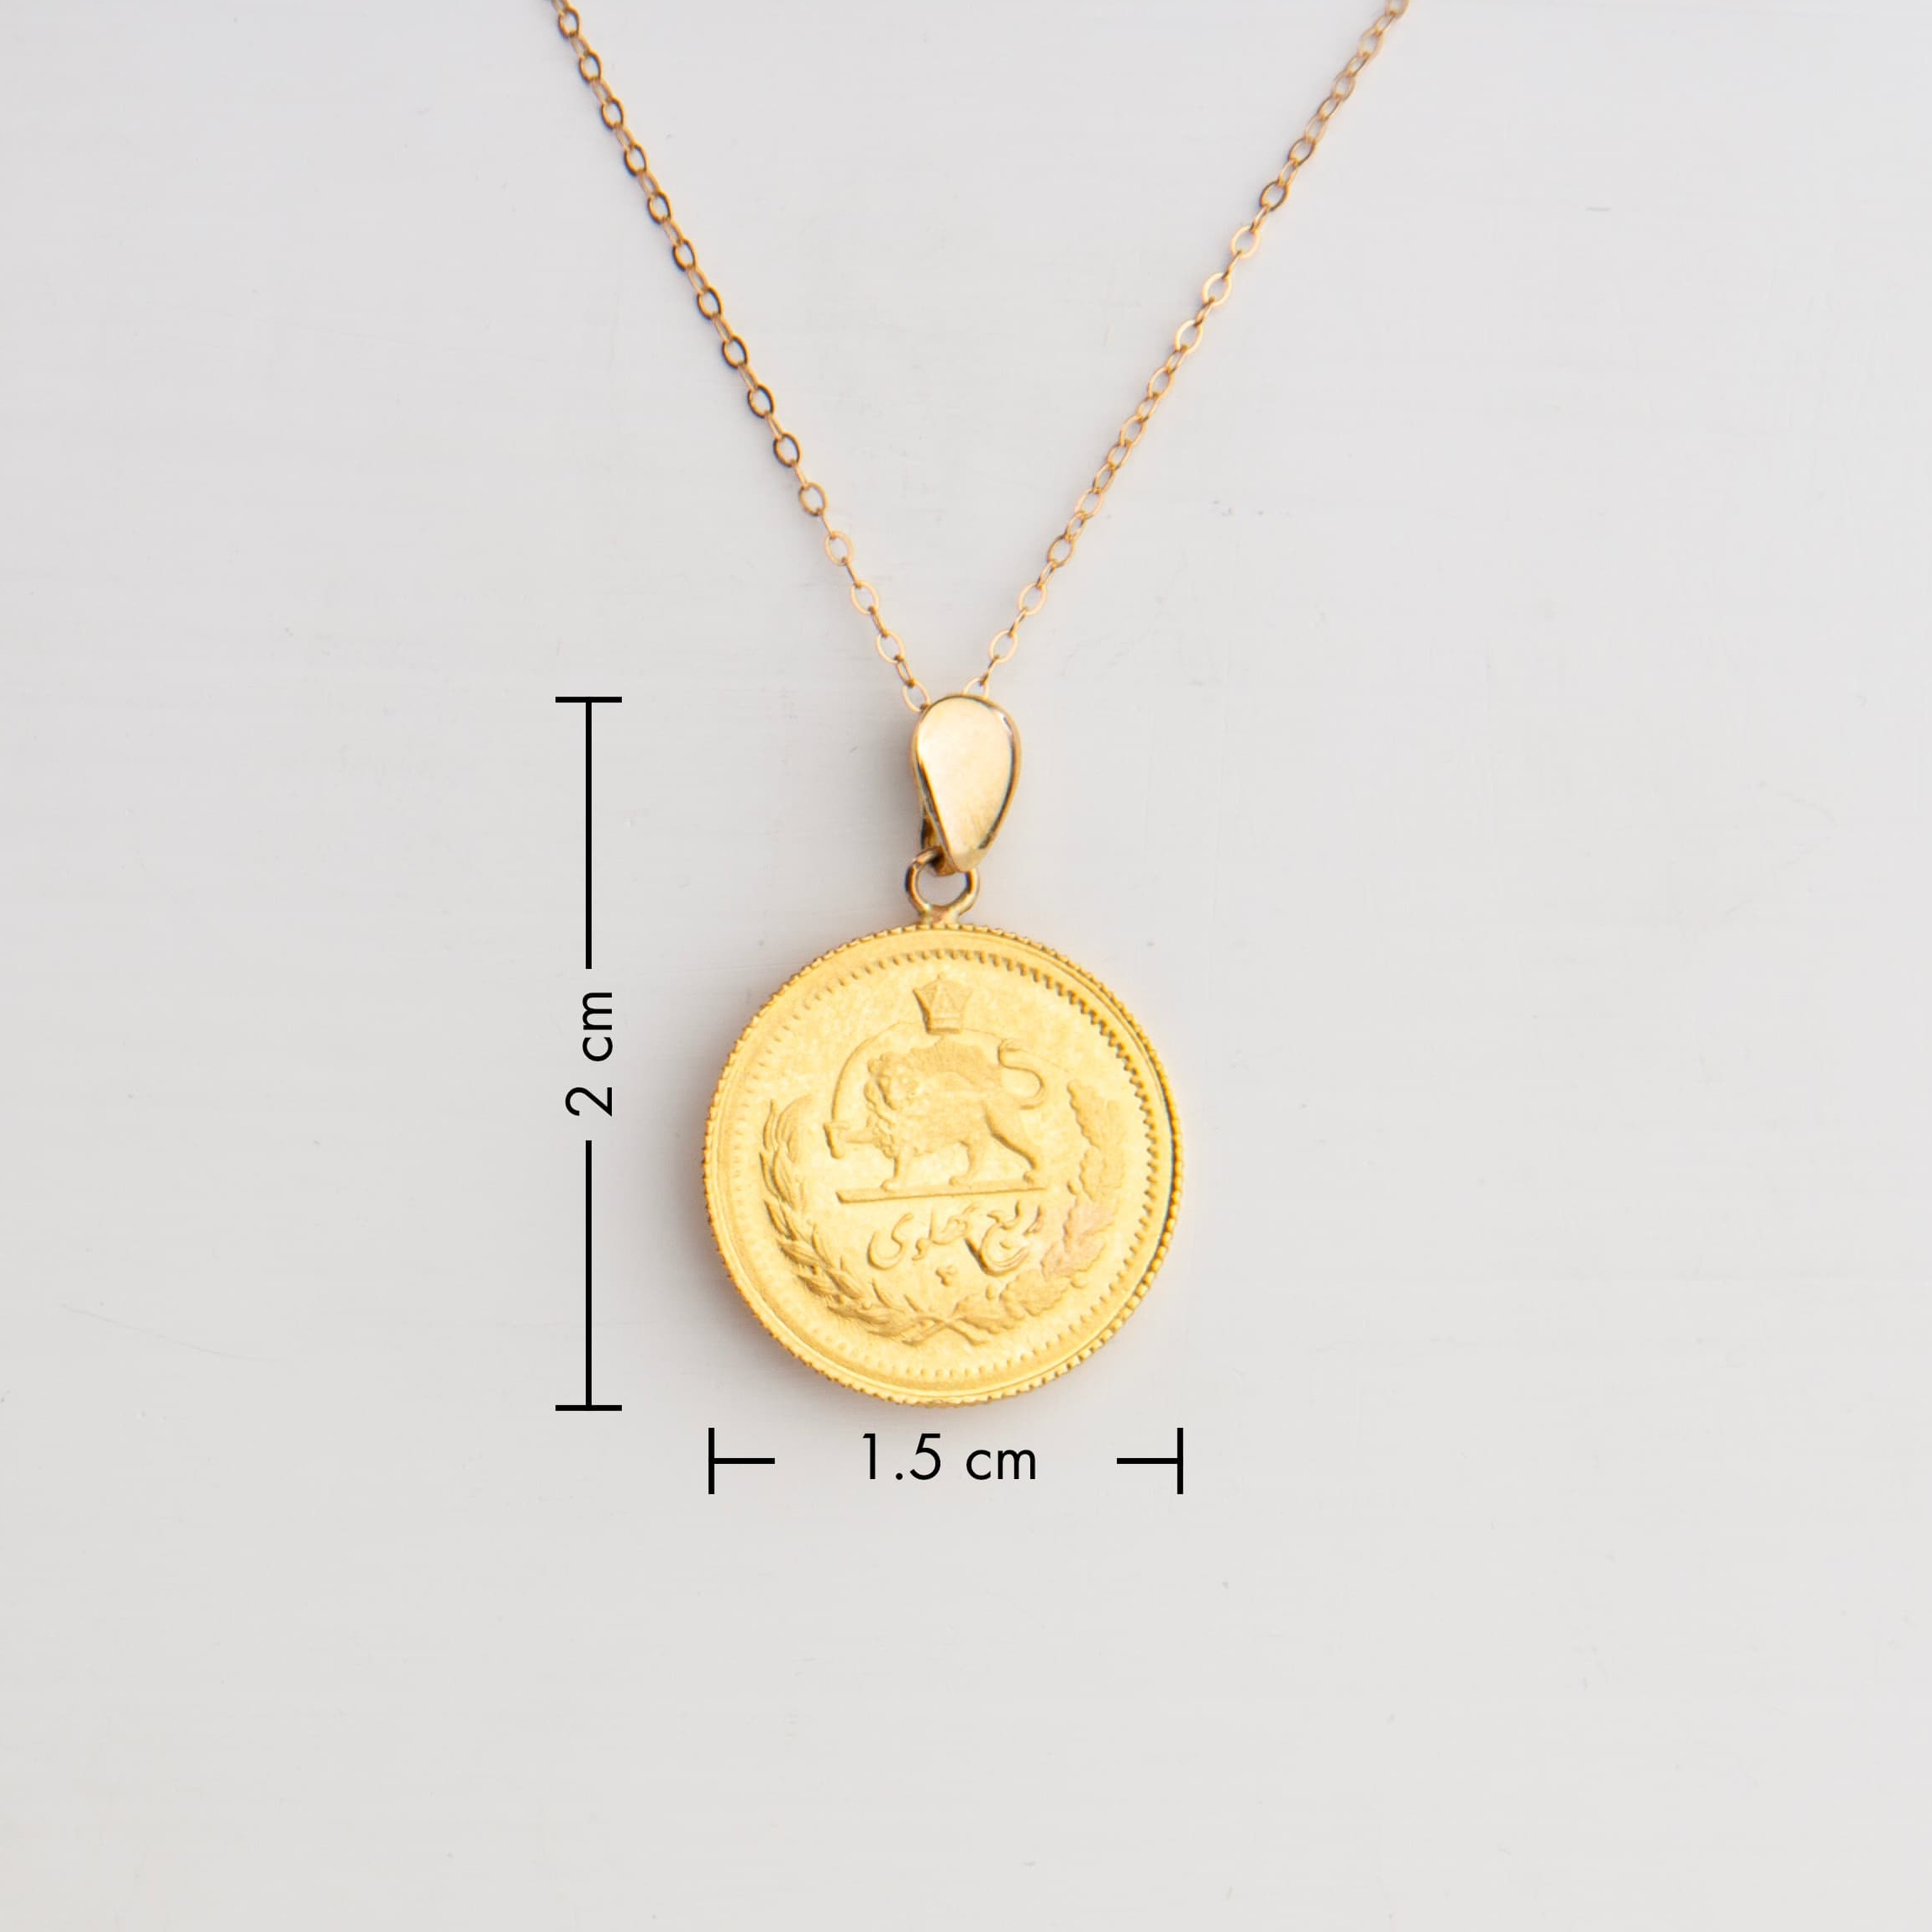 Genuine Pirate Era 1536 22K Gold Spanish Coin 1 Escudo Doubloon Pendant -  Cannon Beach Treasure Company